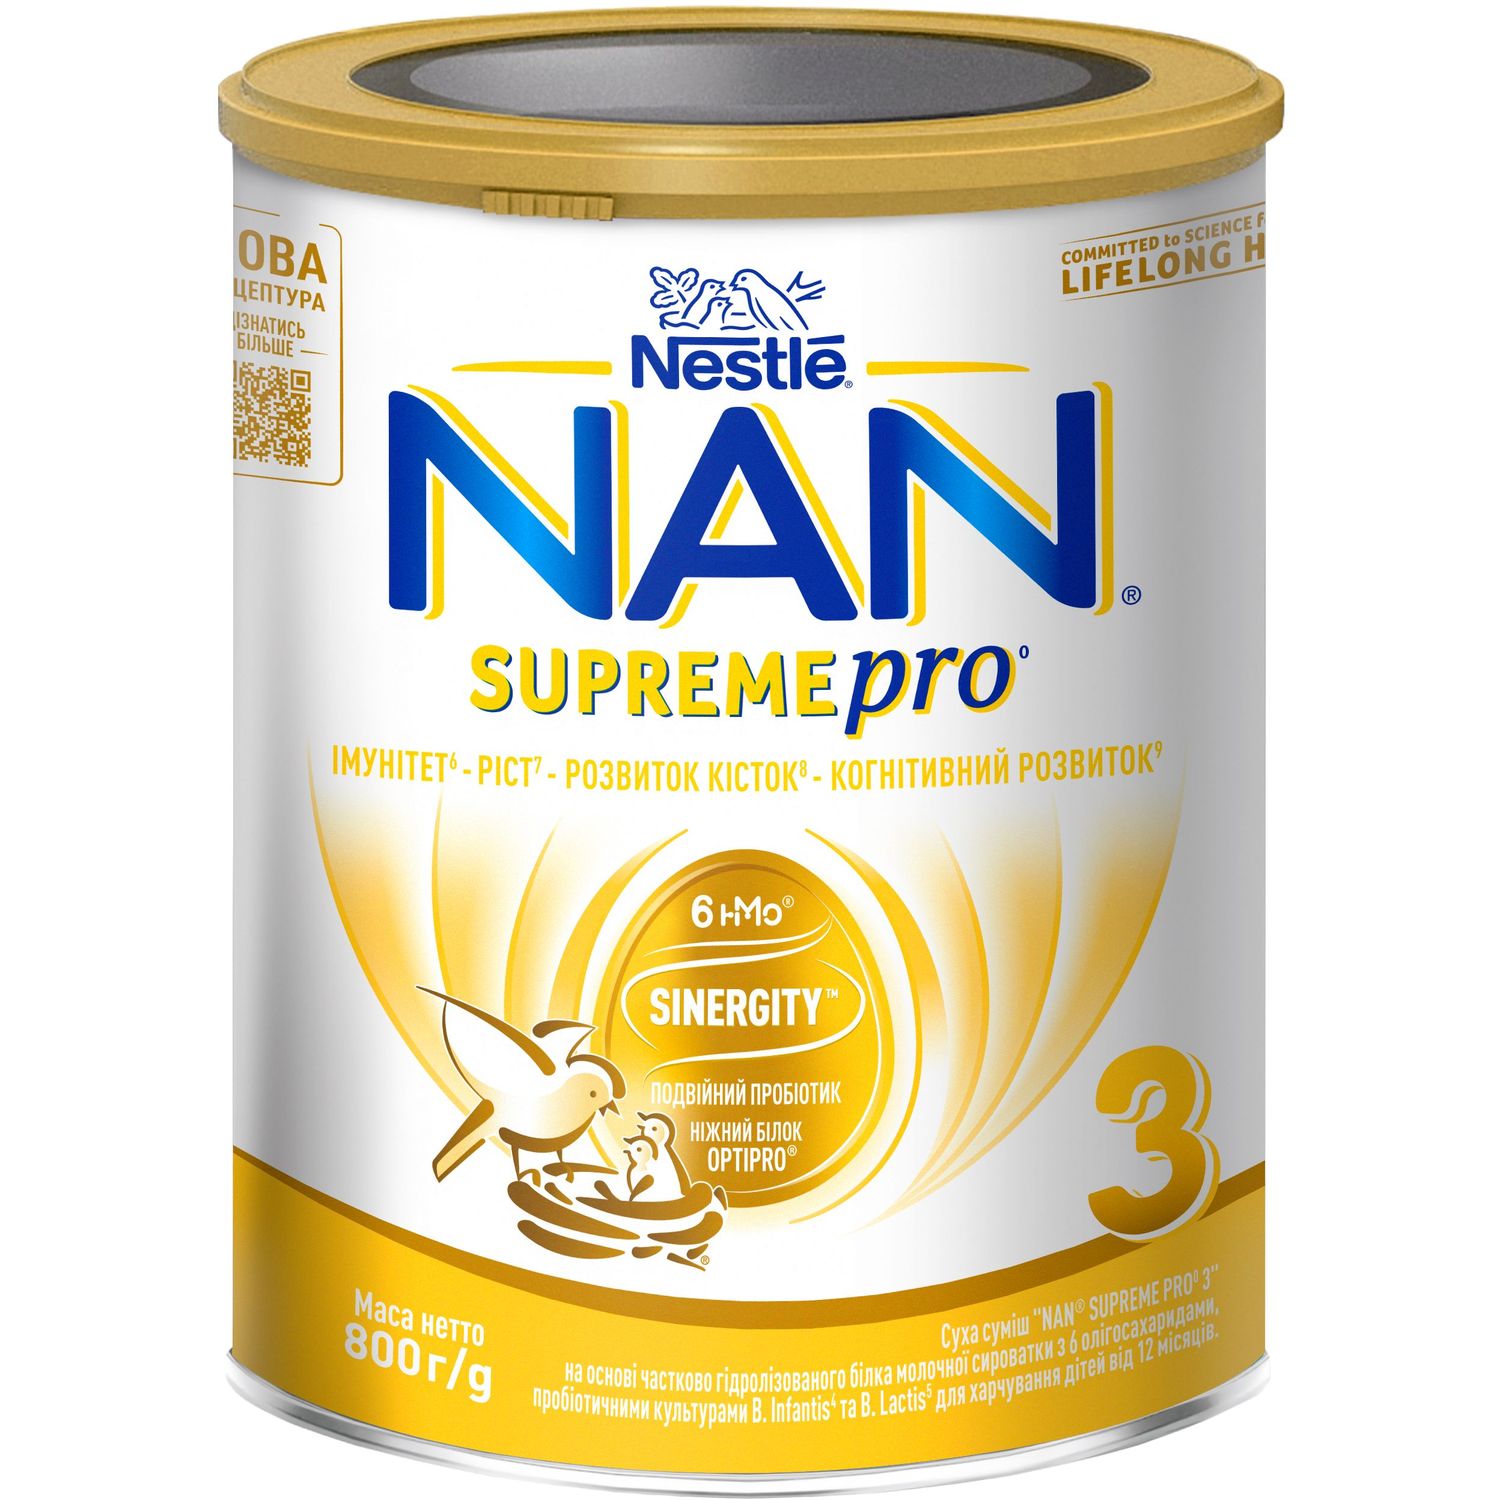 Сухая смесь NAN 3 Supreme Pro с 6 олигосахаридами и двойным пробиотиком для питания детей от 12 месяцев 800 г - фото 1